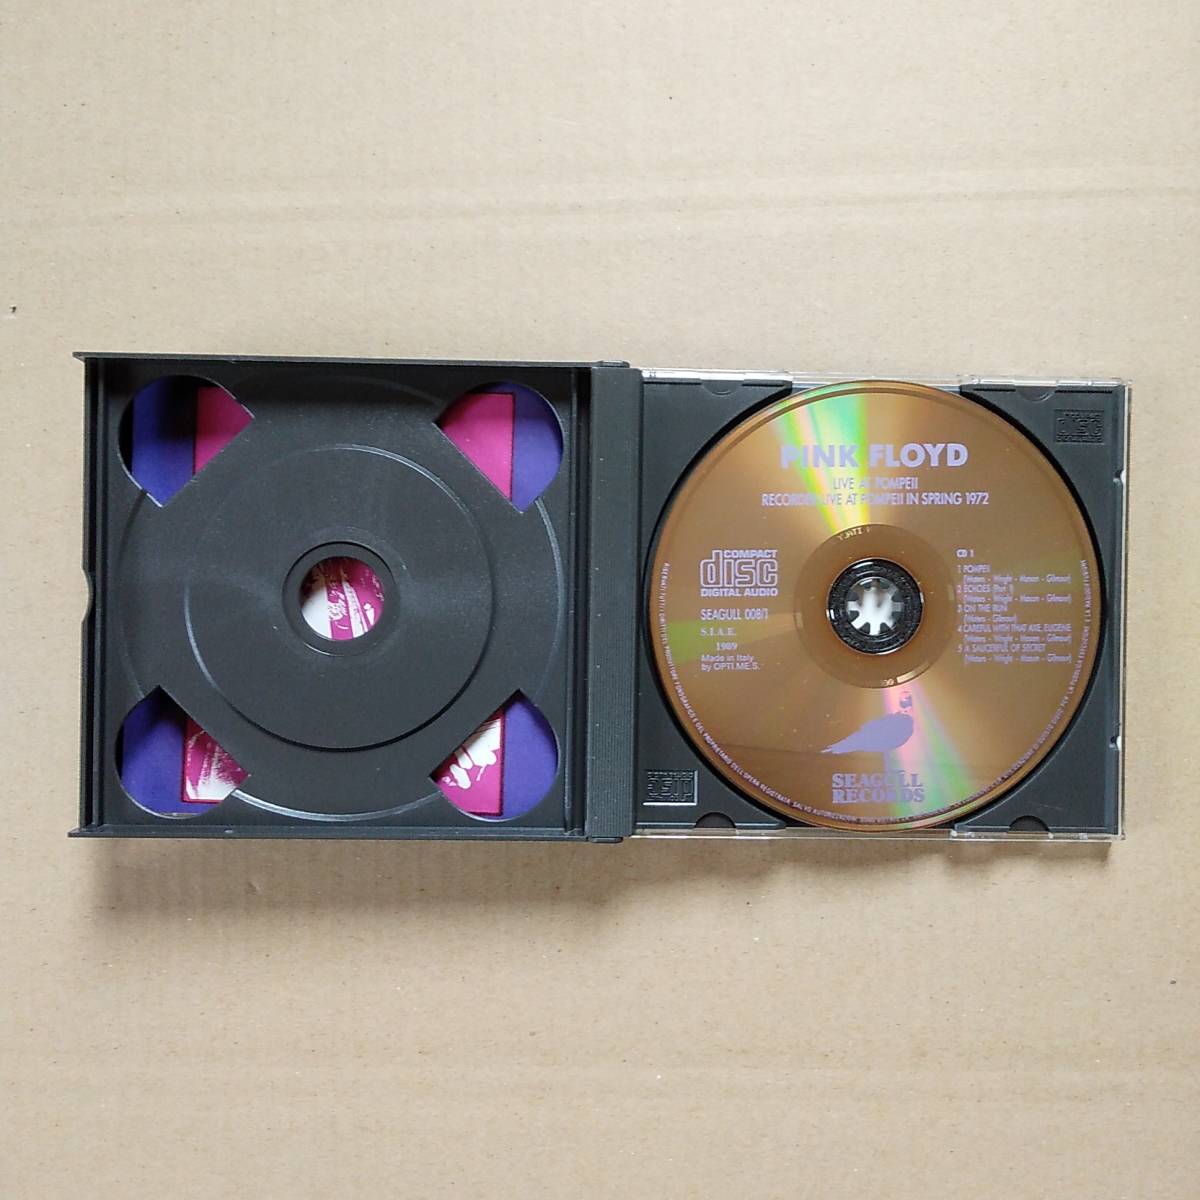 ピンク・フロイド ライヴ・アット・ポンペイ CD 2枚組 輸入盤 イタリア製_画像5